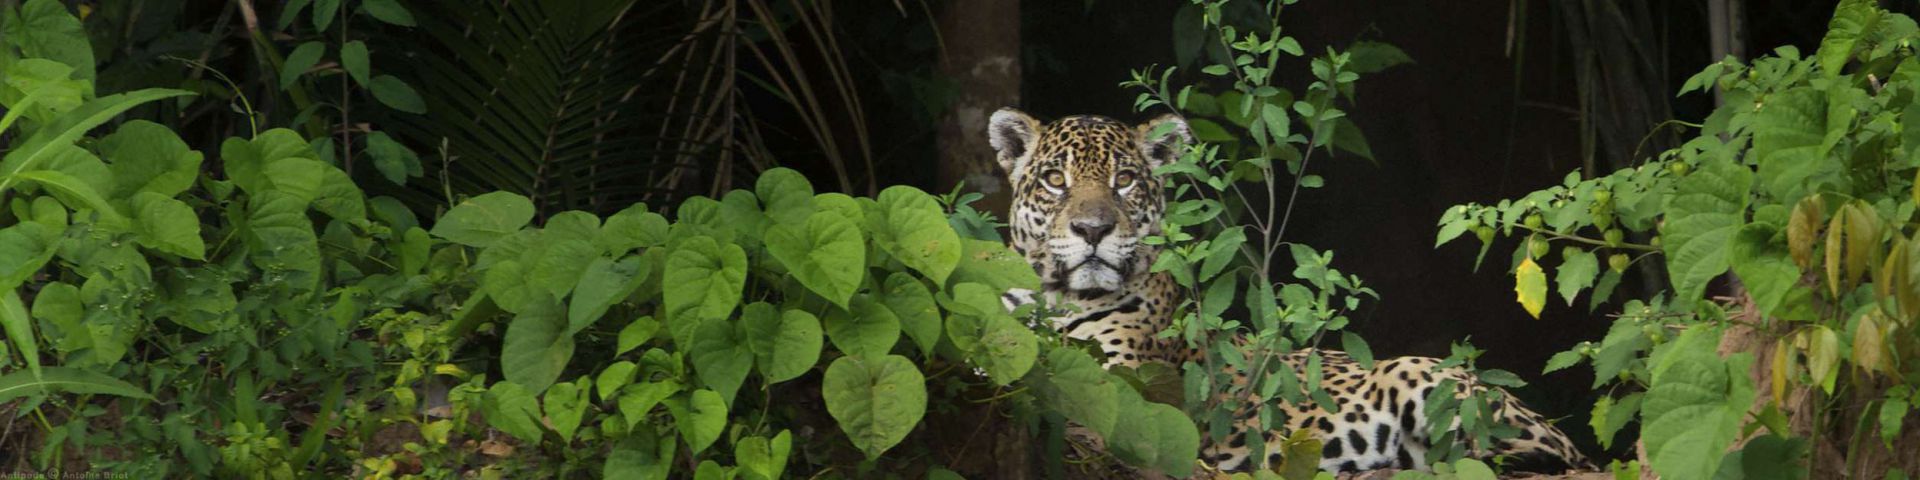 Peruvian jungle